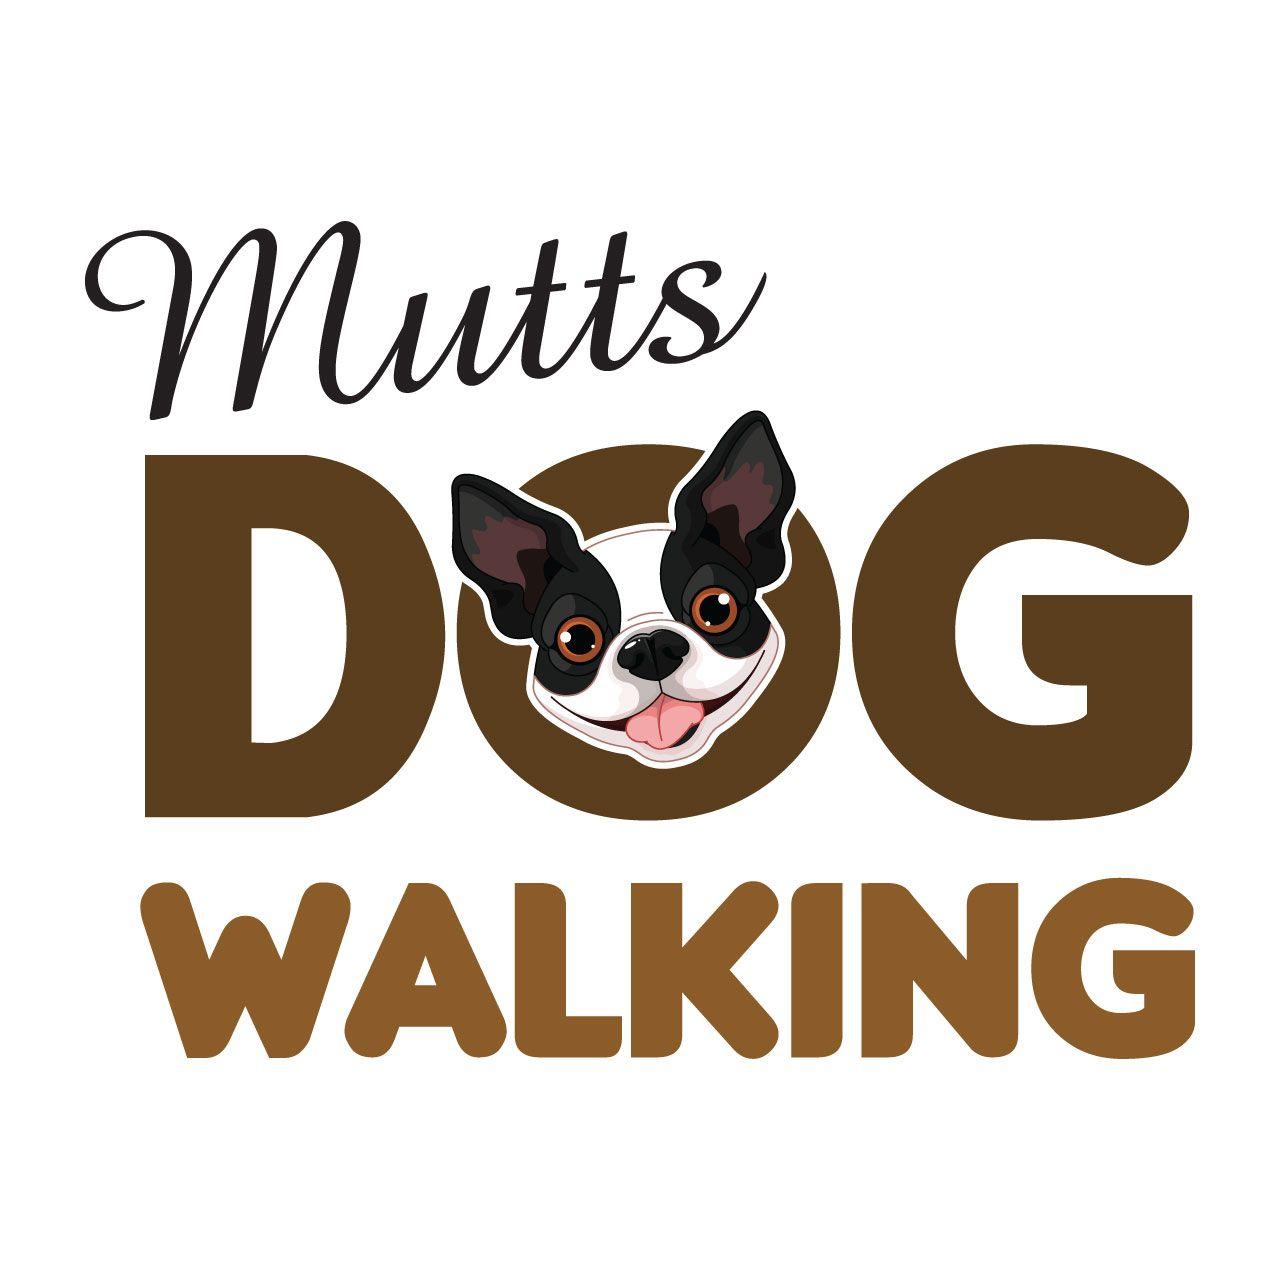 Walking Logo - Mutts Dog Walking Logo